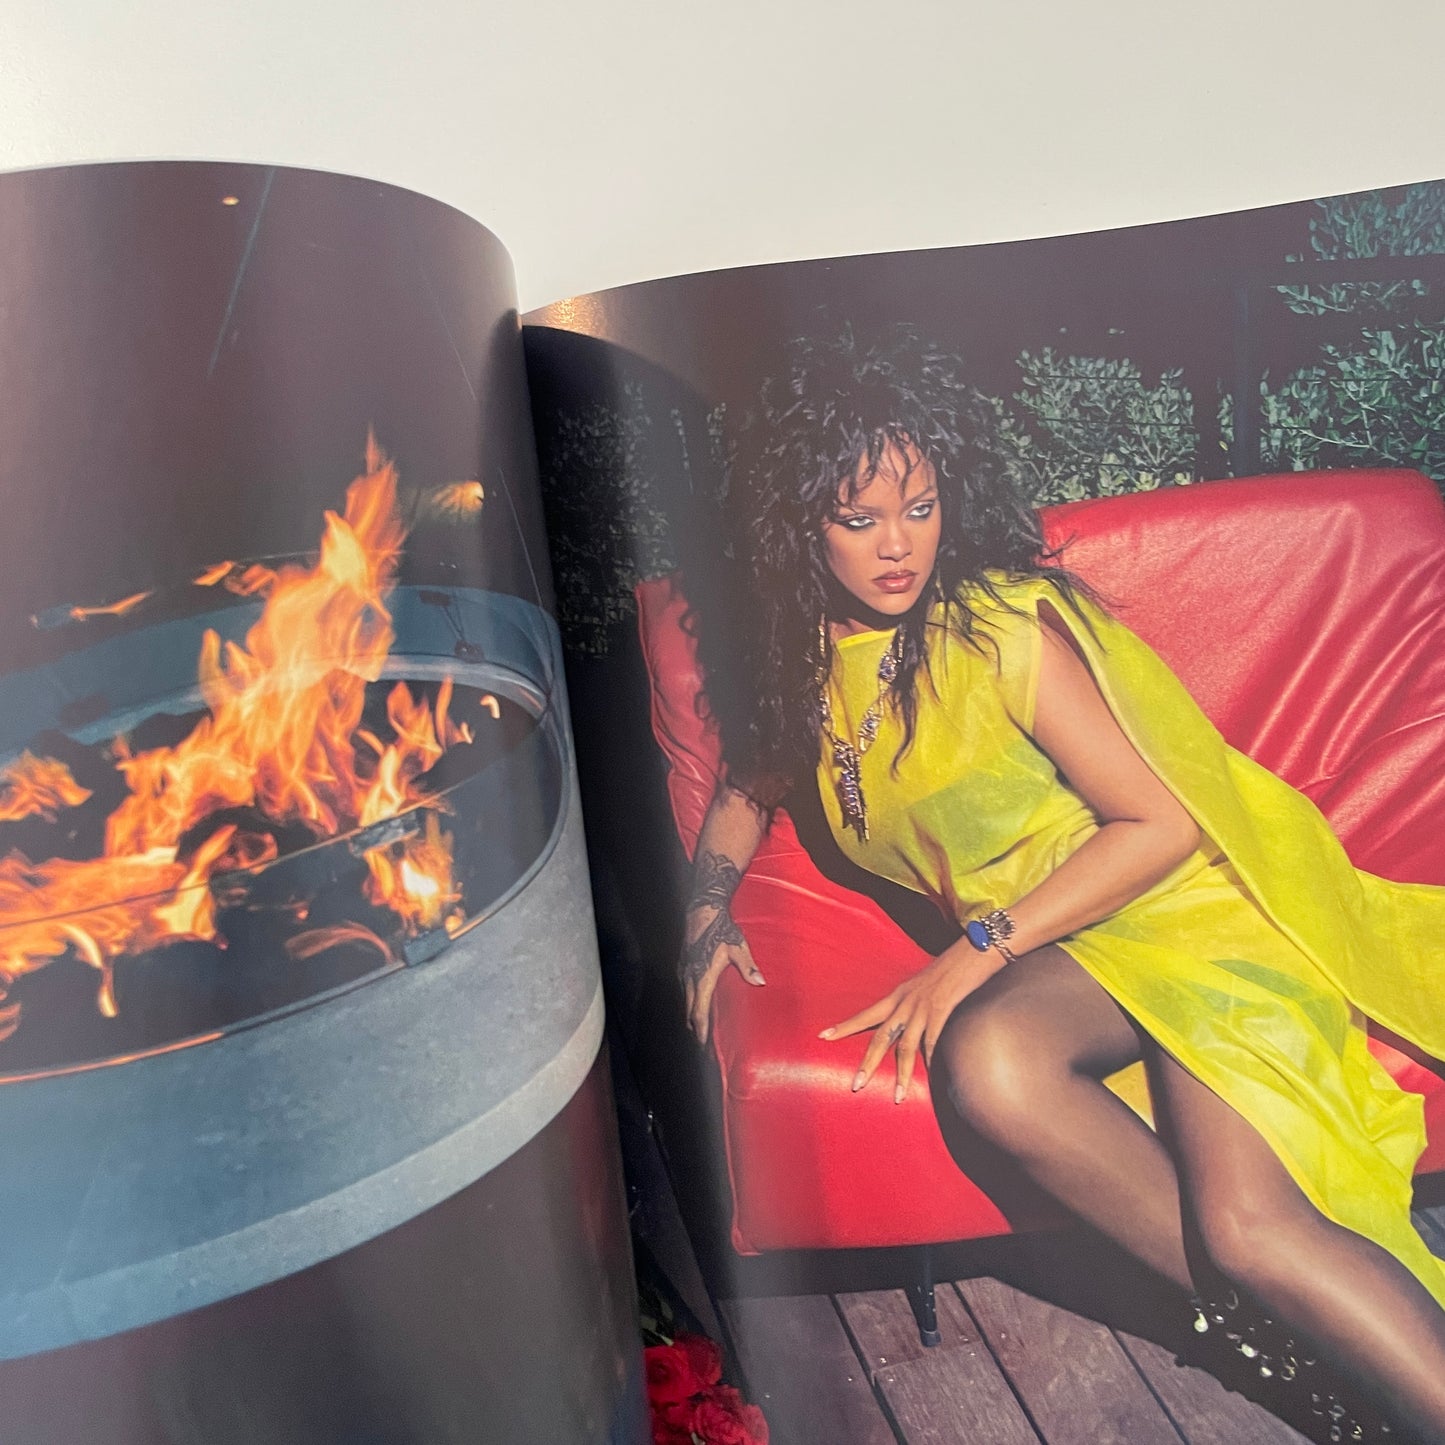 Vogue 2023 March - Rihanna & Rocky